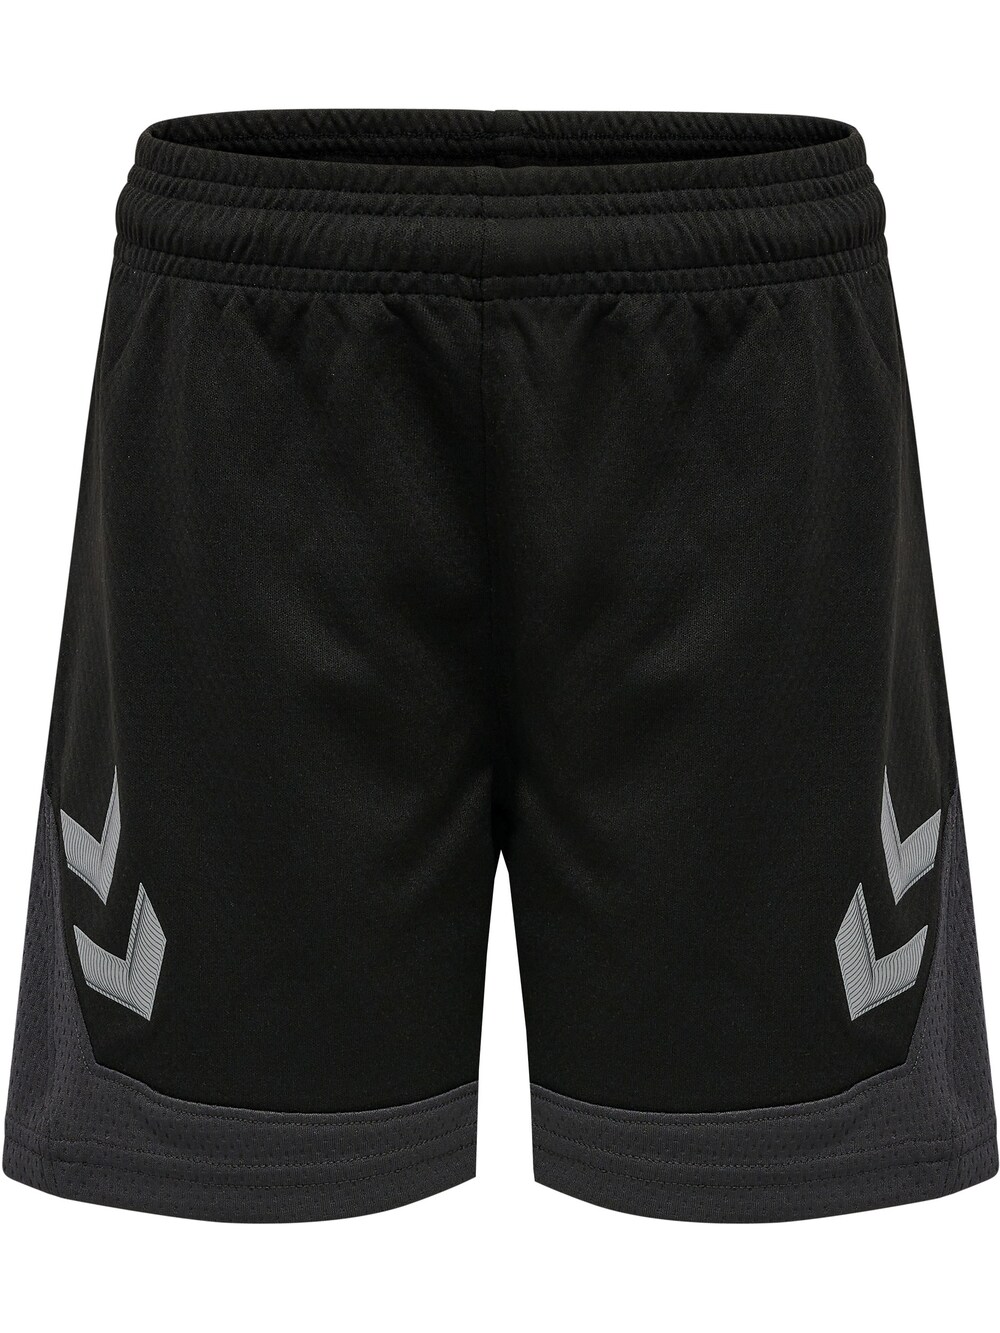 Обычные тренировочные брюки Hummel, черный обычные тренировочные брюки hummel черный